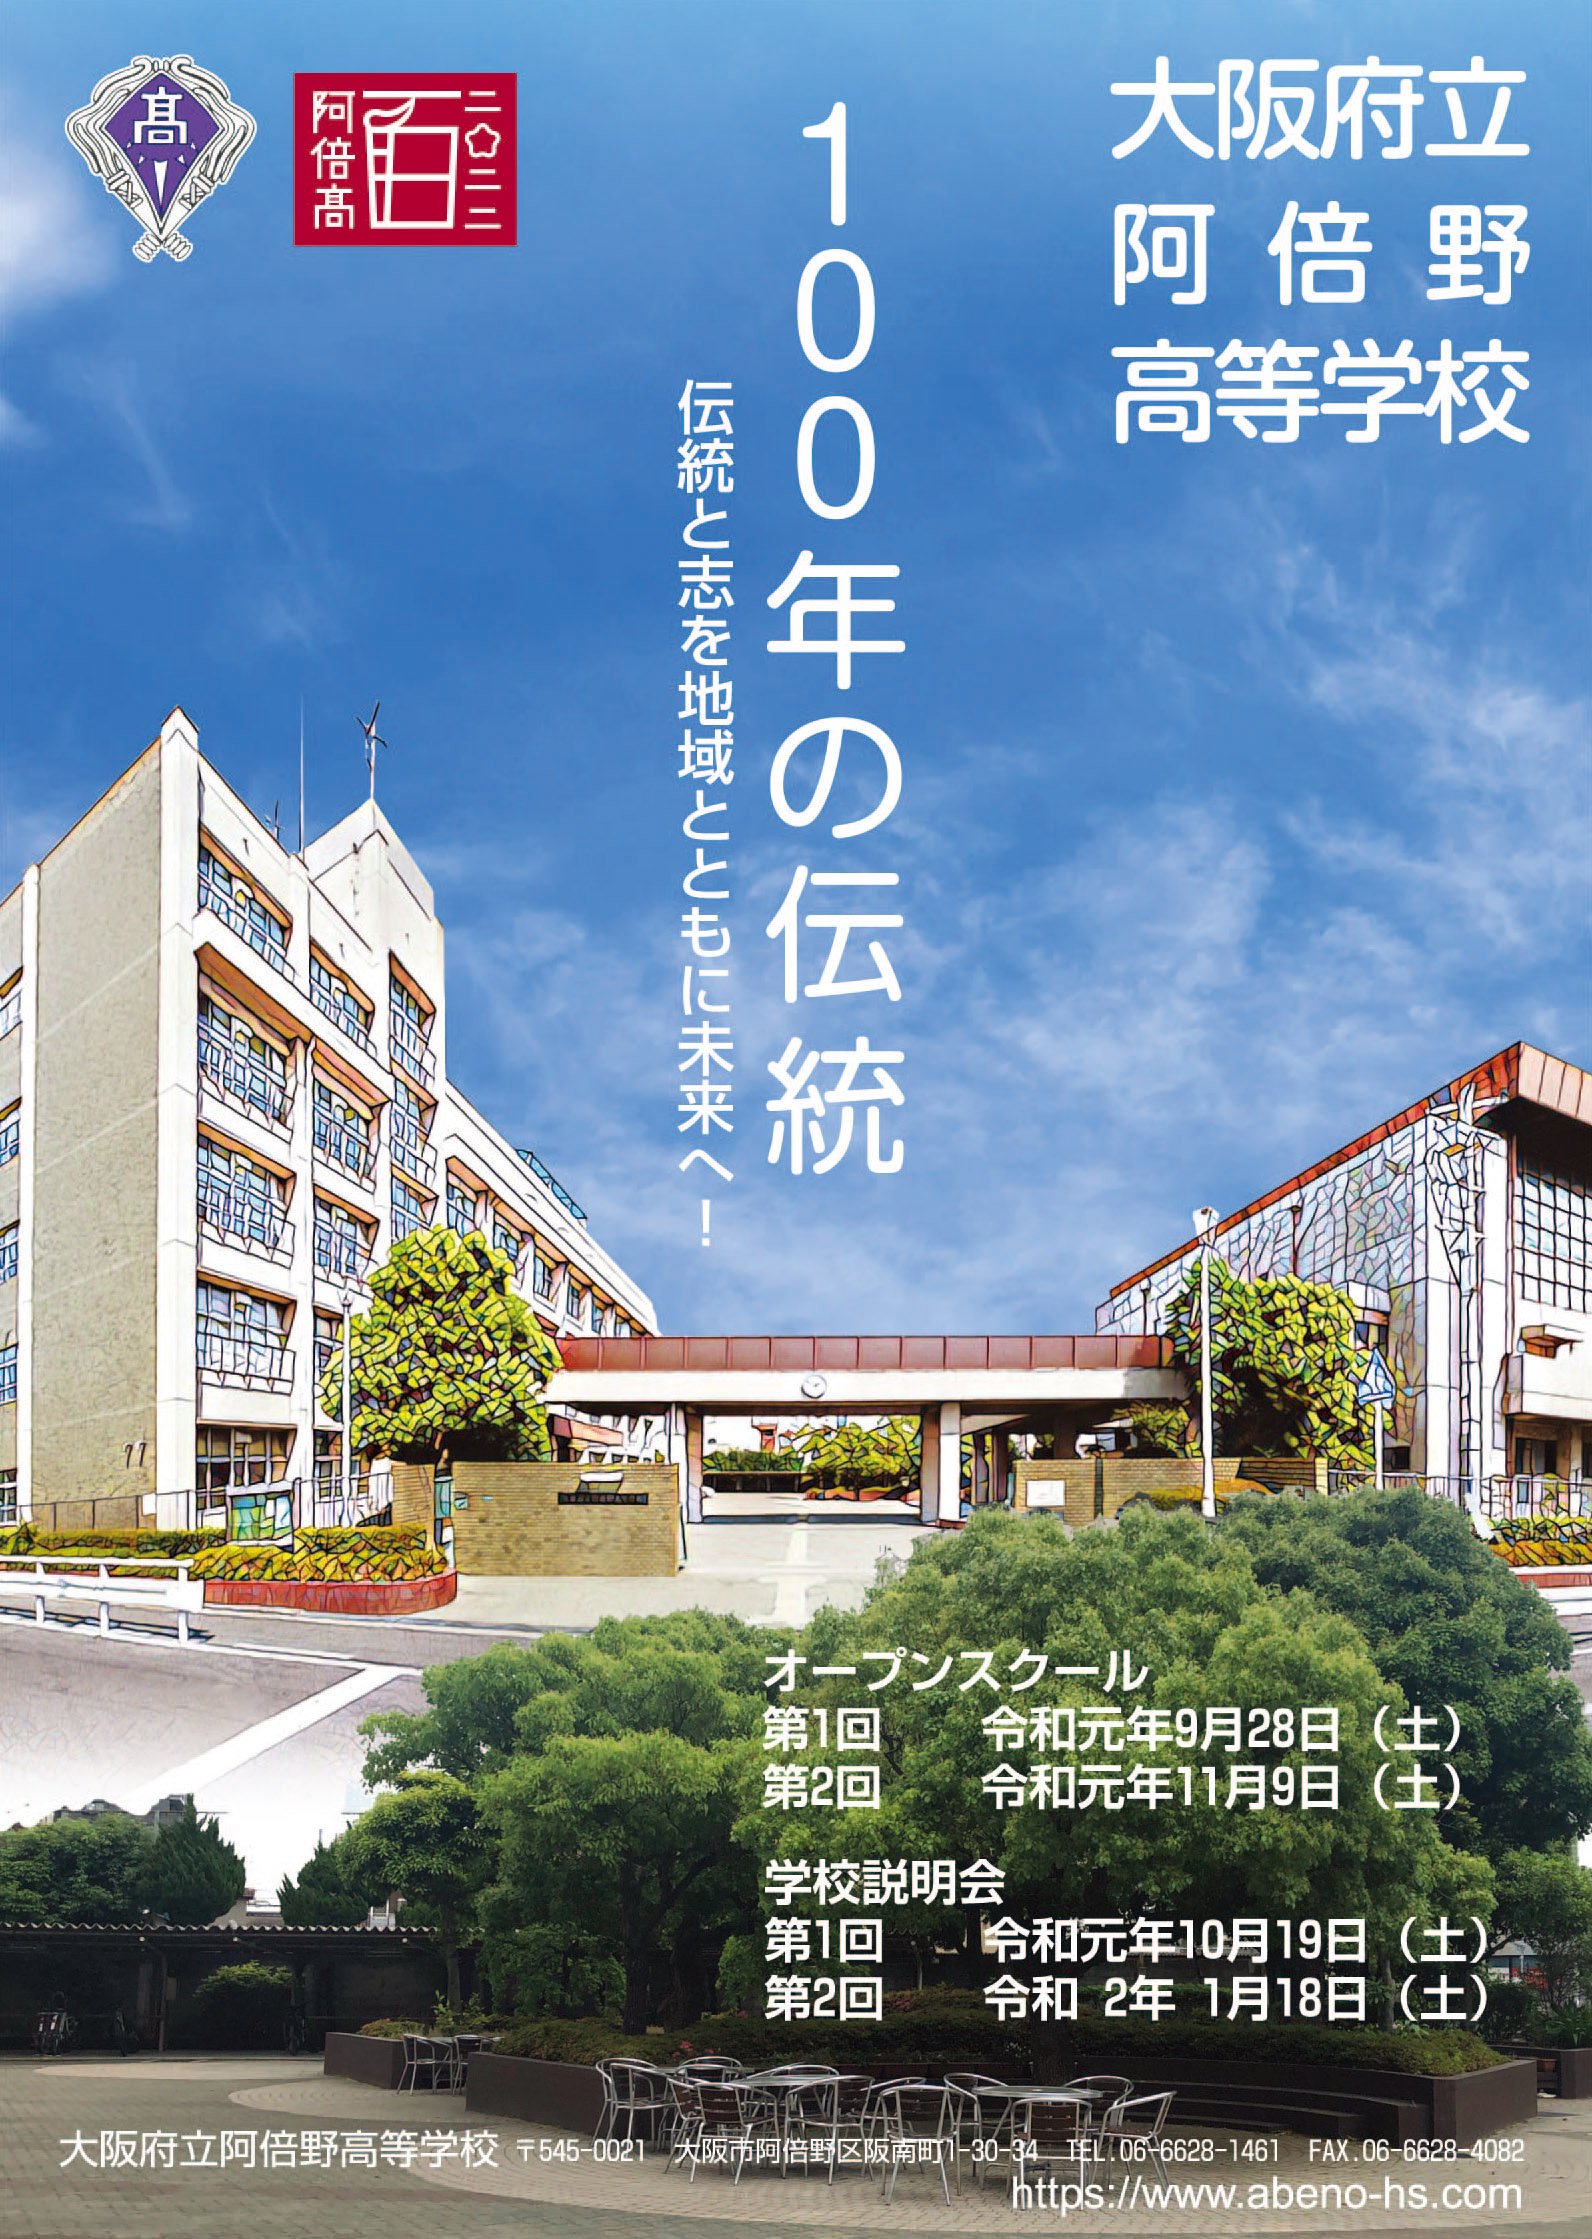 １００年の伝統 伝統と志を地域とともに未来へ 大阪府立阿倍野高等学校